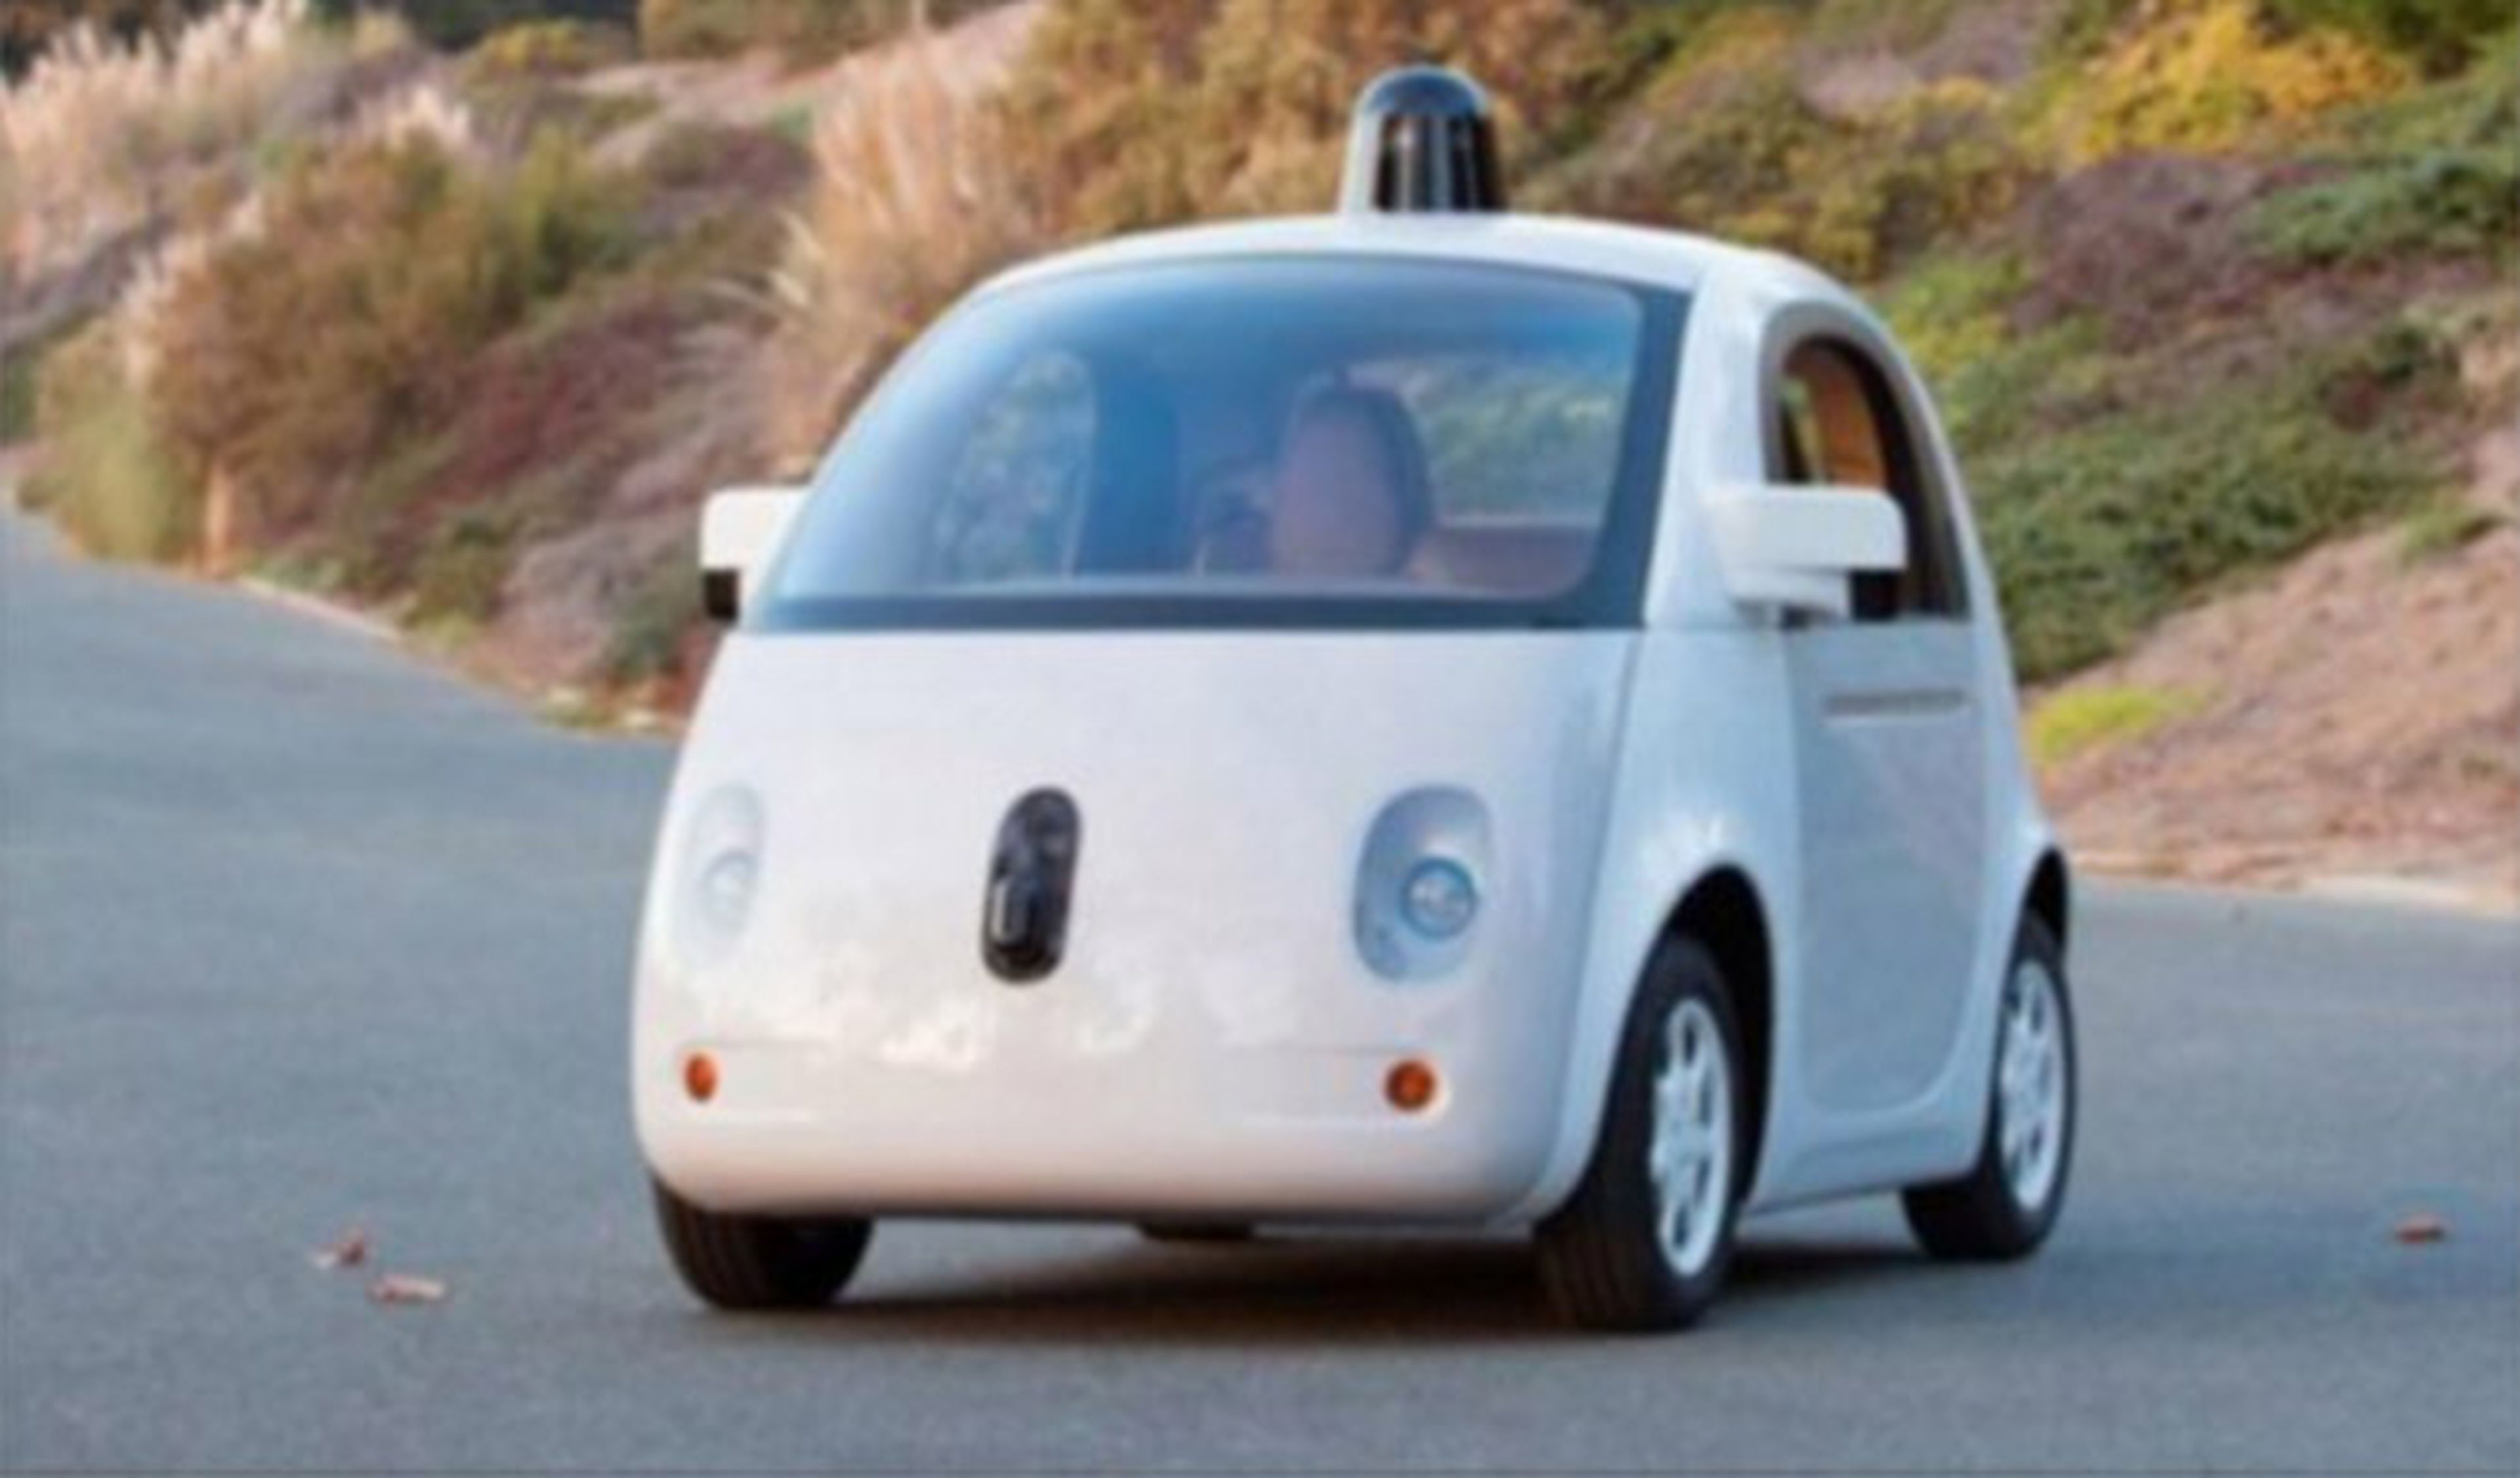 El coche de Google ya se considera un conductor más en EEUU